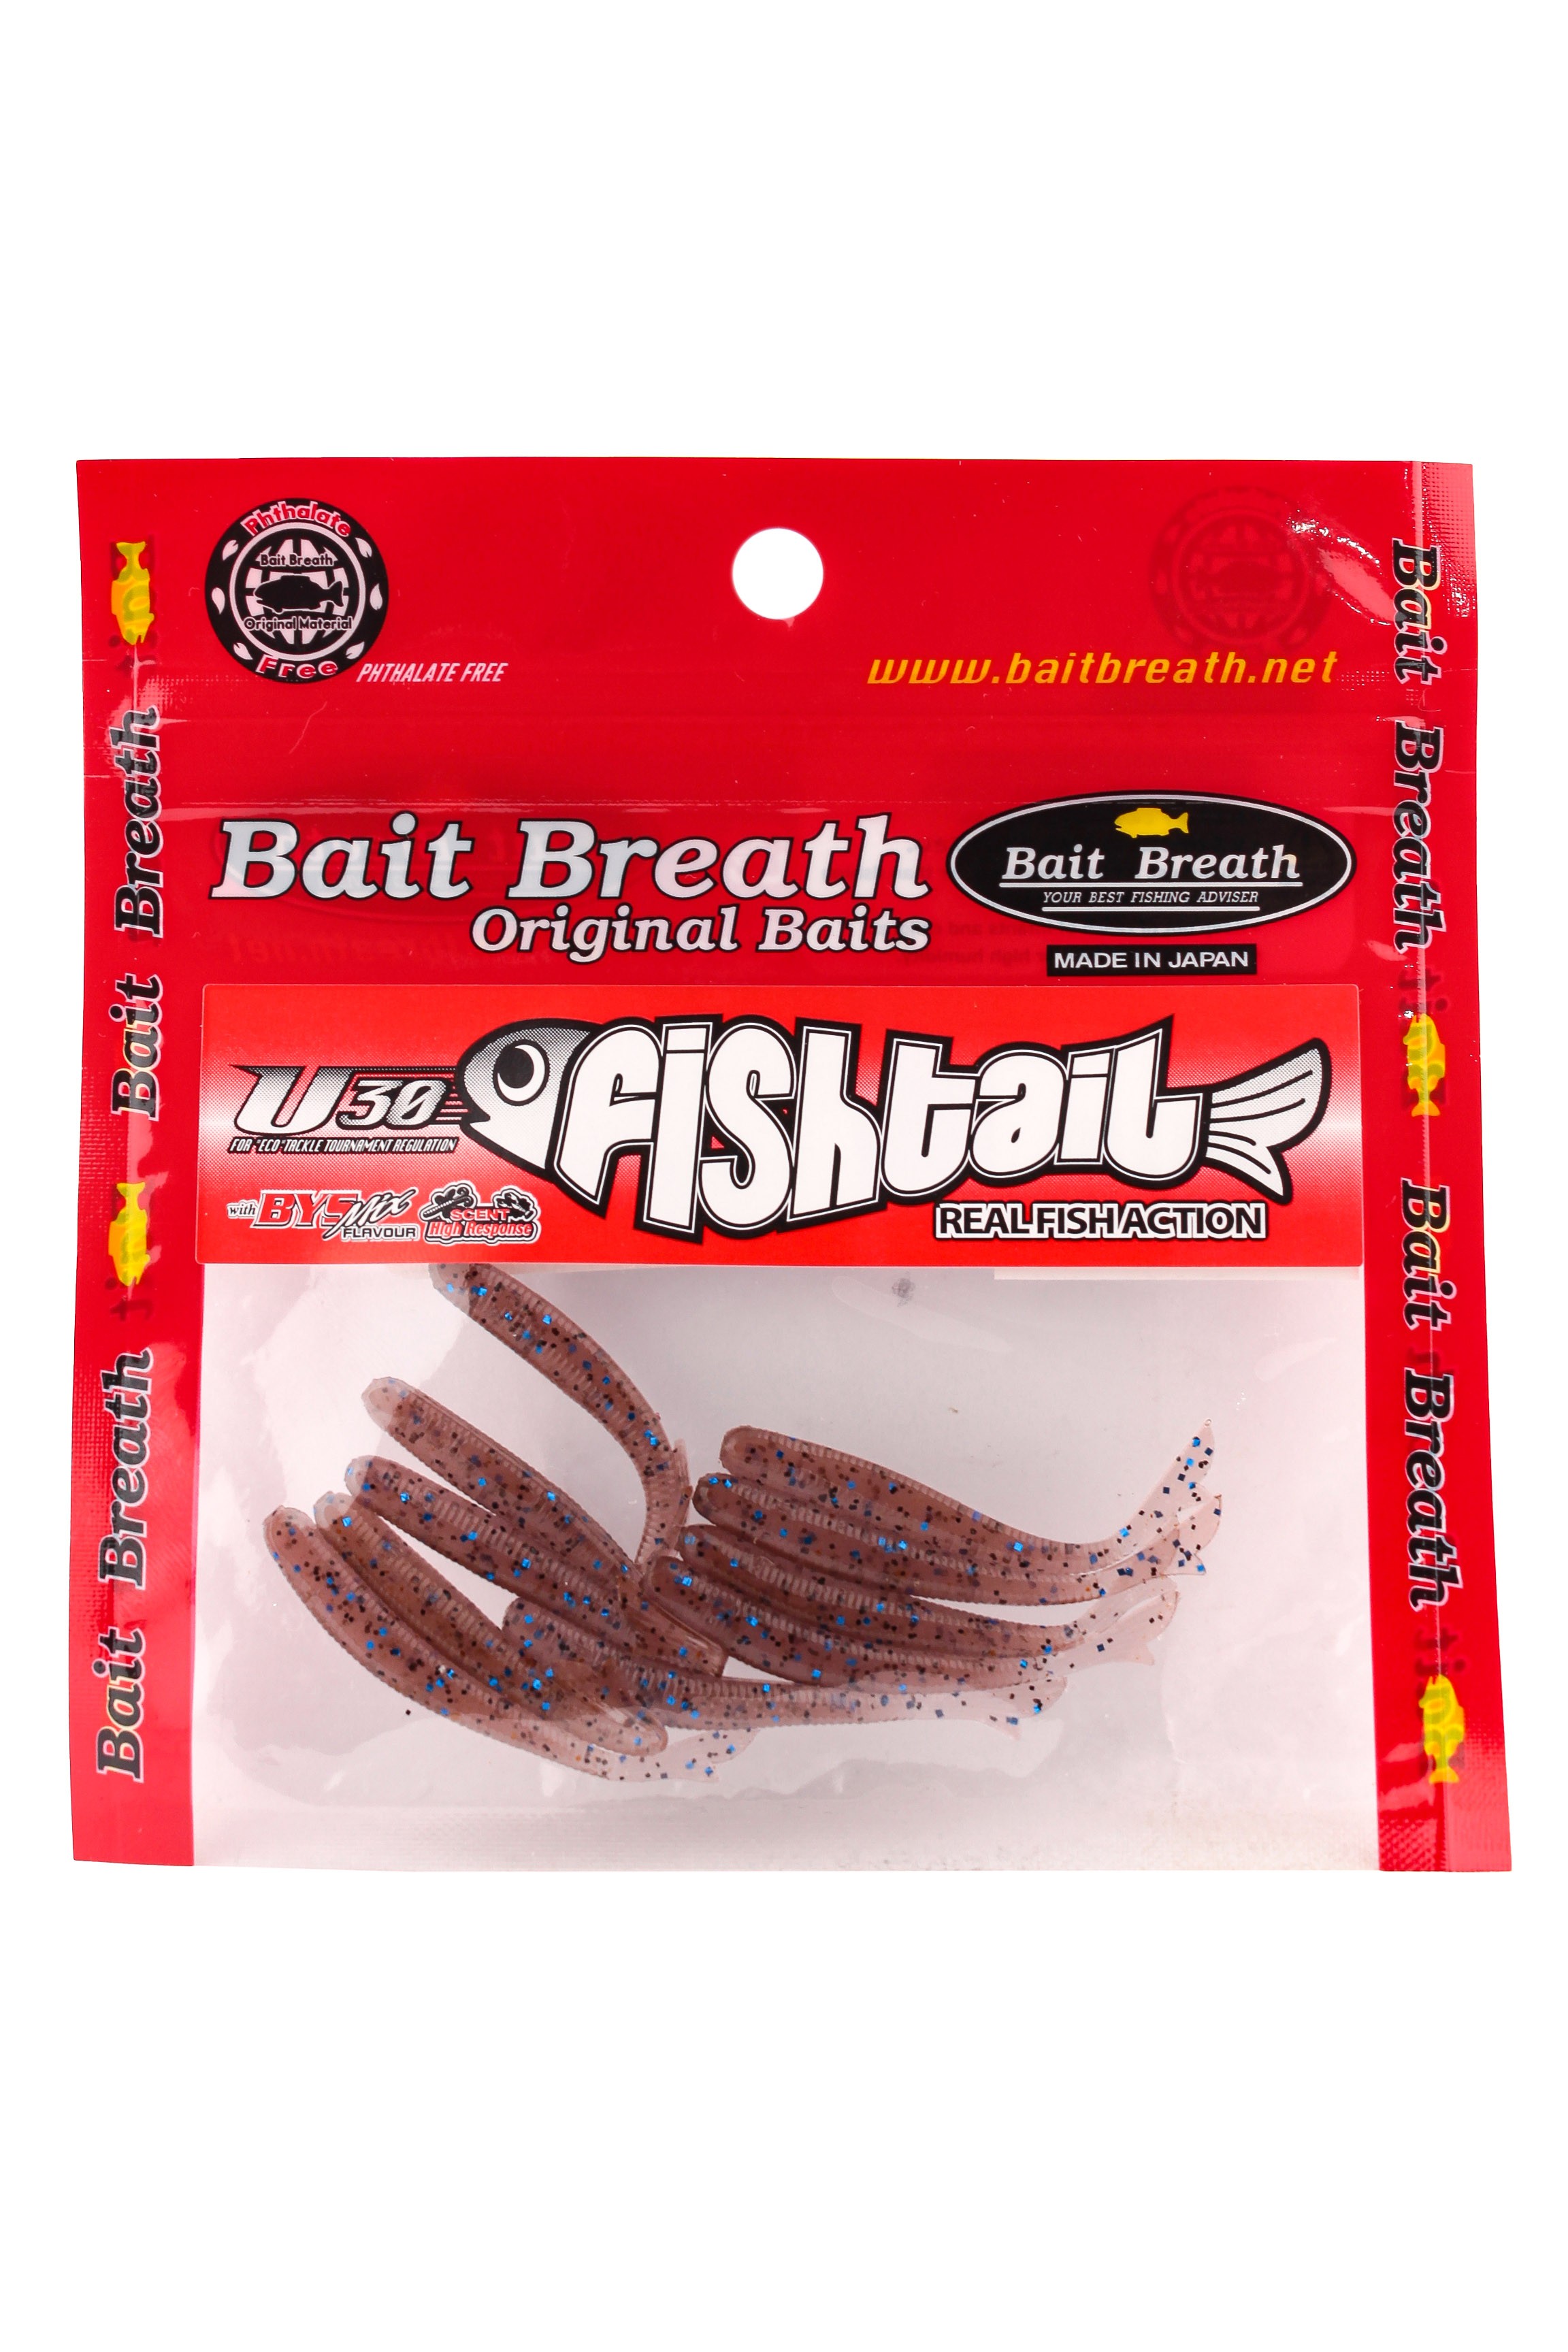 Приманка Bait Breath U30 Fish tail 2 145 уп.10шт - фото 1